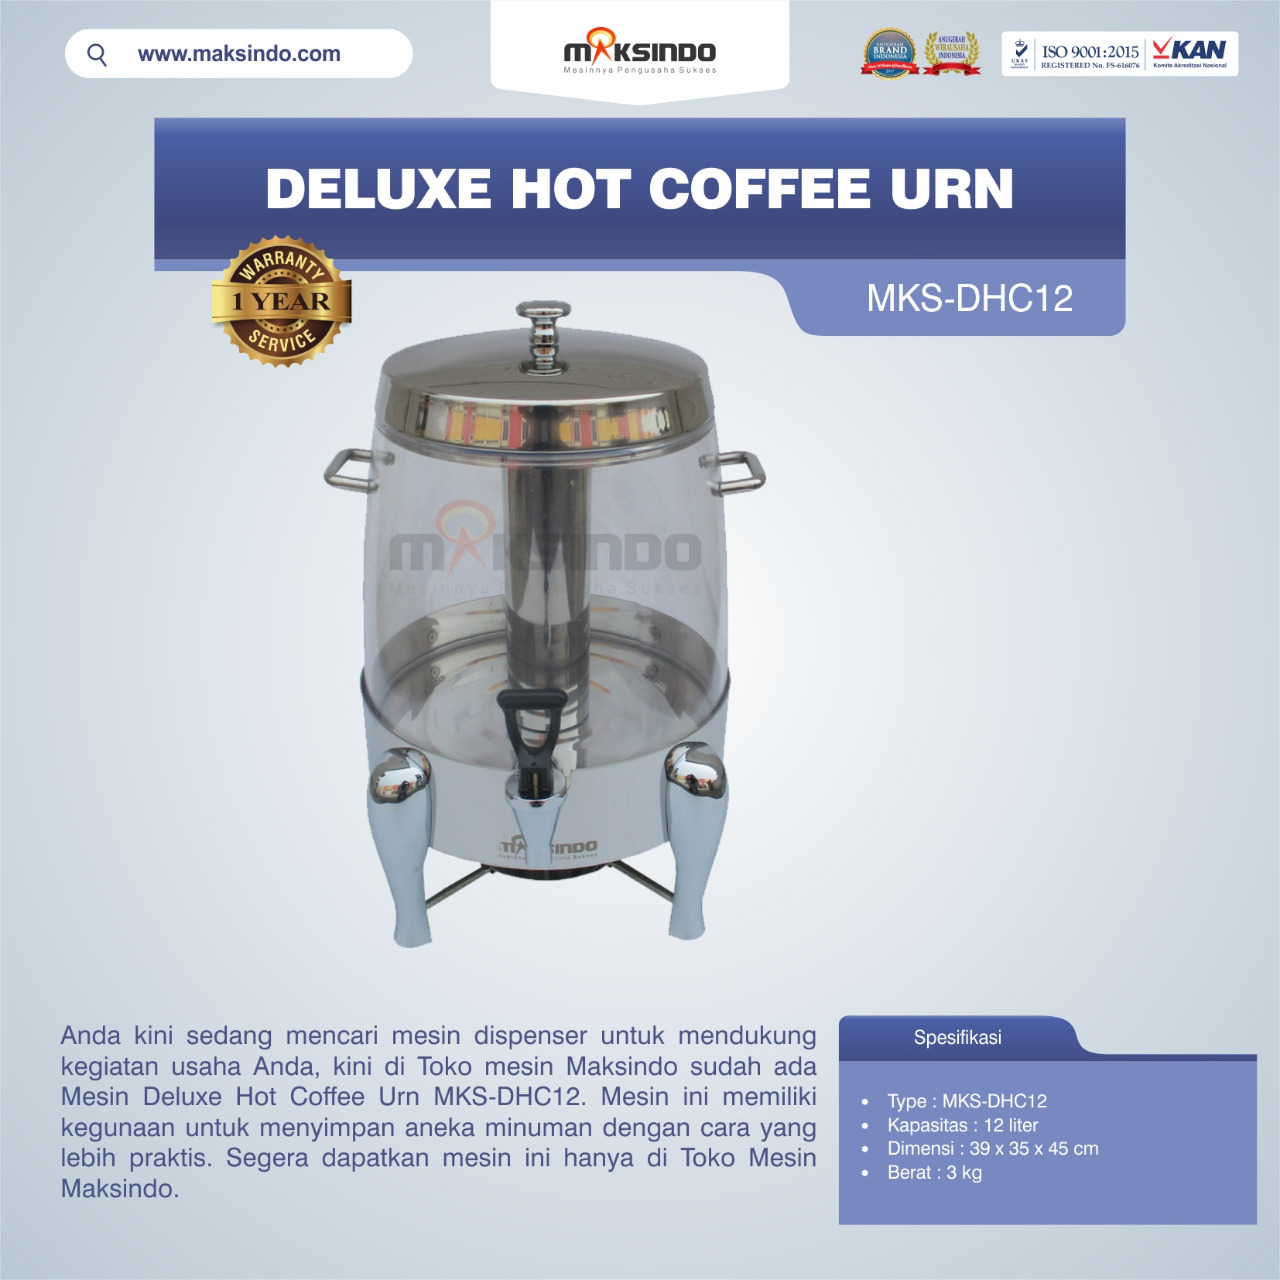 Jual Deluxe Hot Coffee Urn MKS-DHC12 di Bali